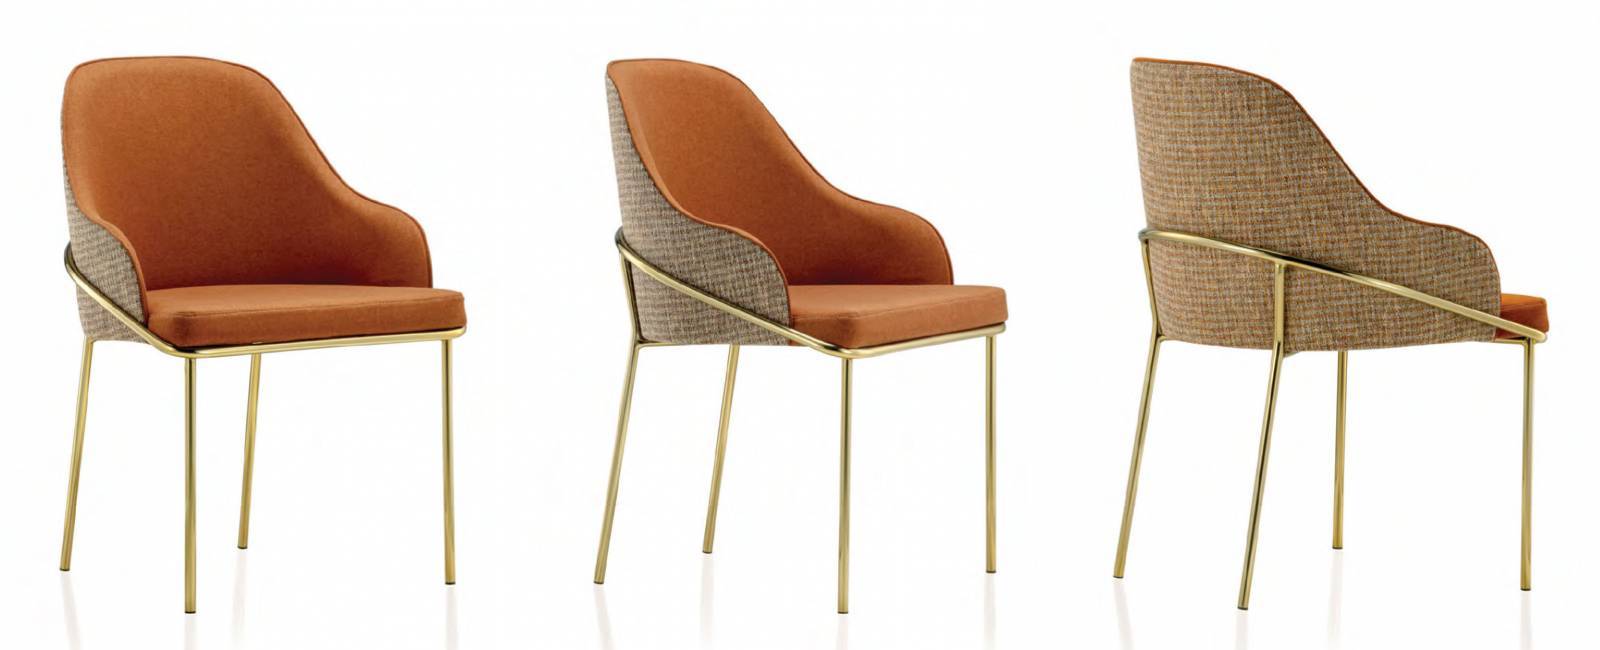 Cadeira Greca I Bell Design - All Home